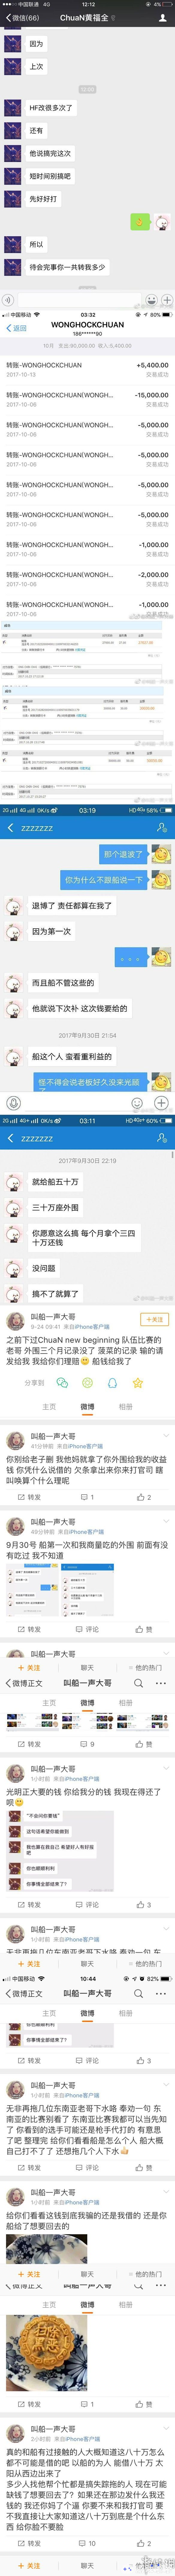 根据微博网友爆料，Dota选手“ChuaN”黄福全买外围打假赛，各种聊天记录与转账记录都被公开。